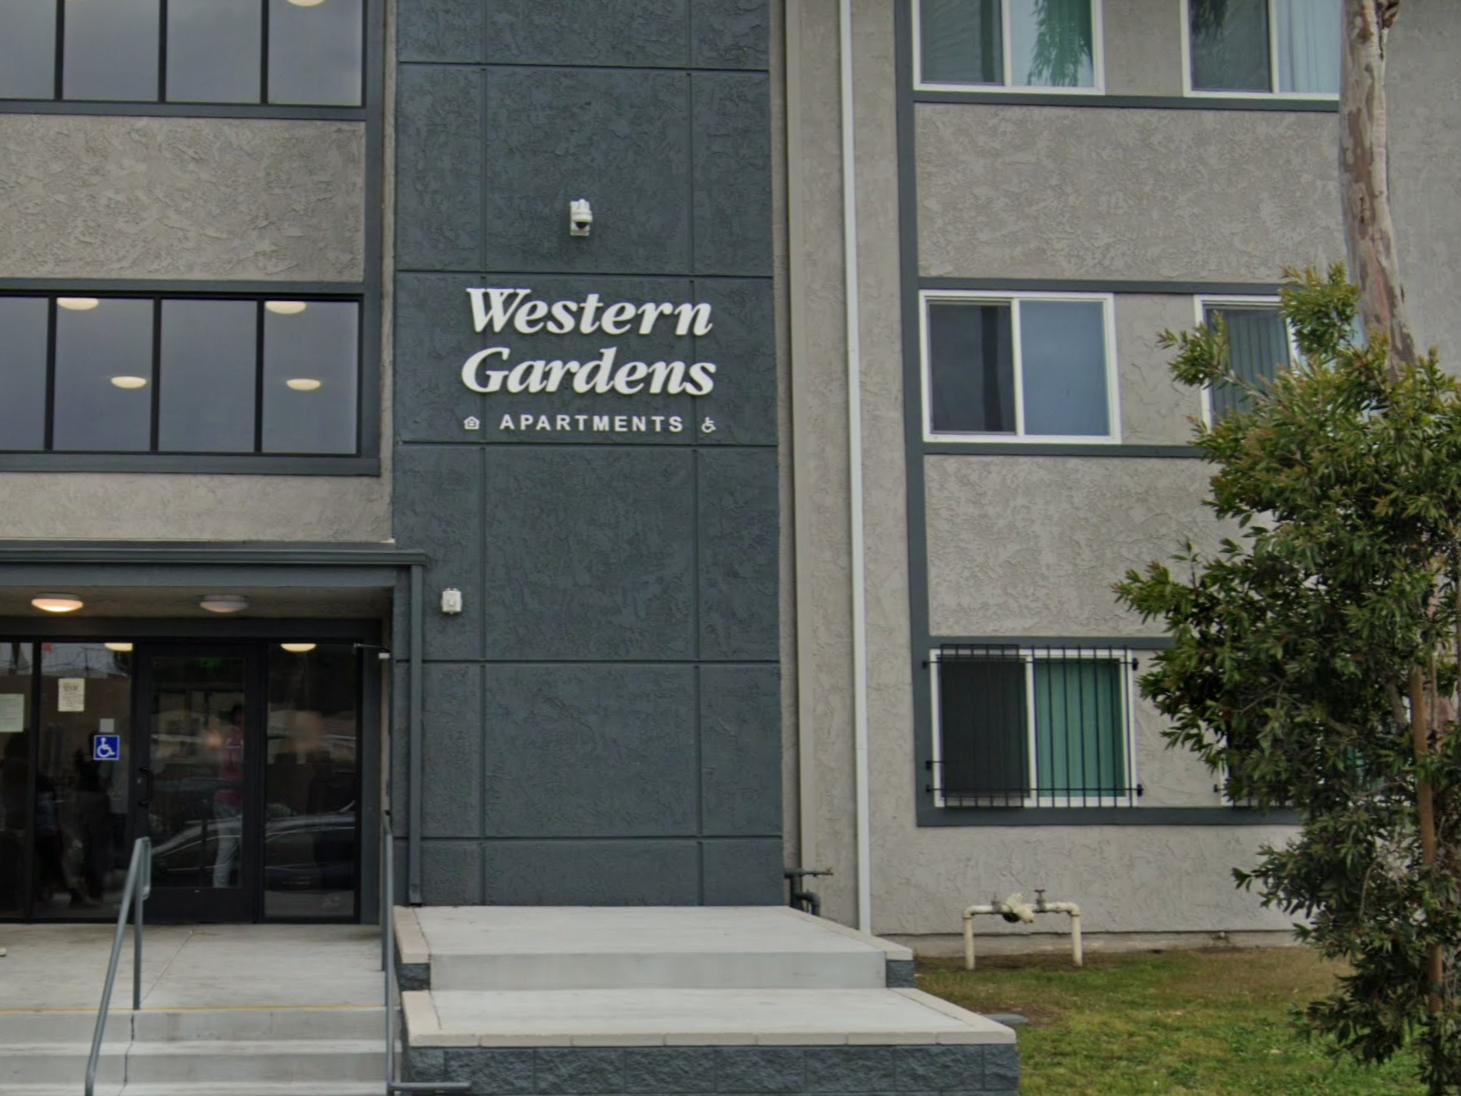 Western Gardens Affordable/ Public Housing